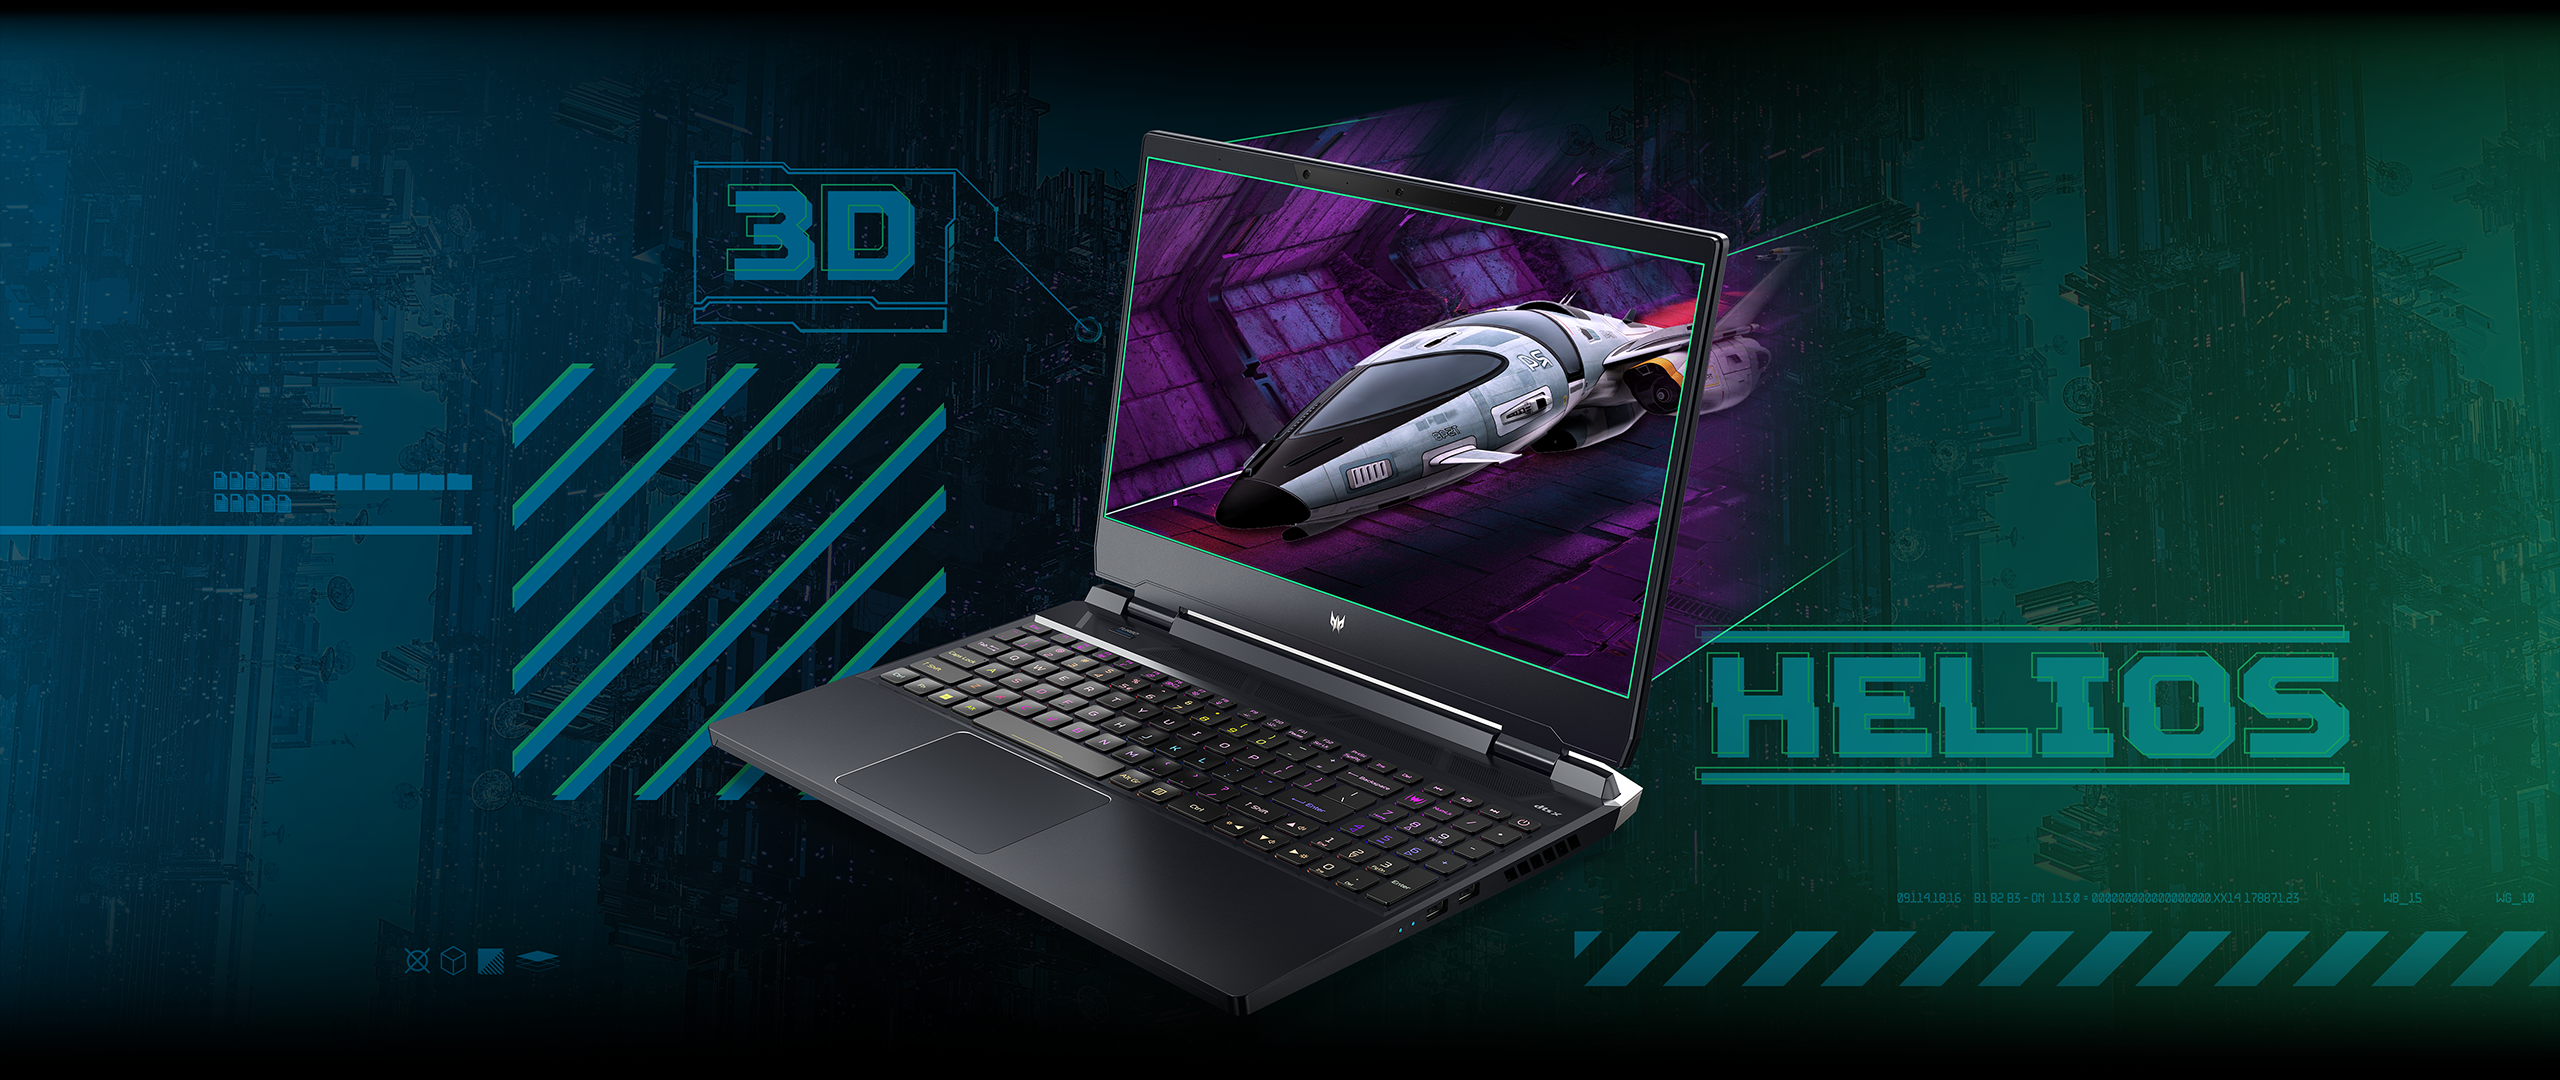 Analizamos el portatil Acer Predator Helios 300 SpatialLabs Edition - 3D sin gafas